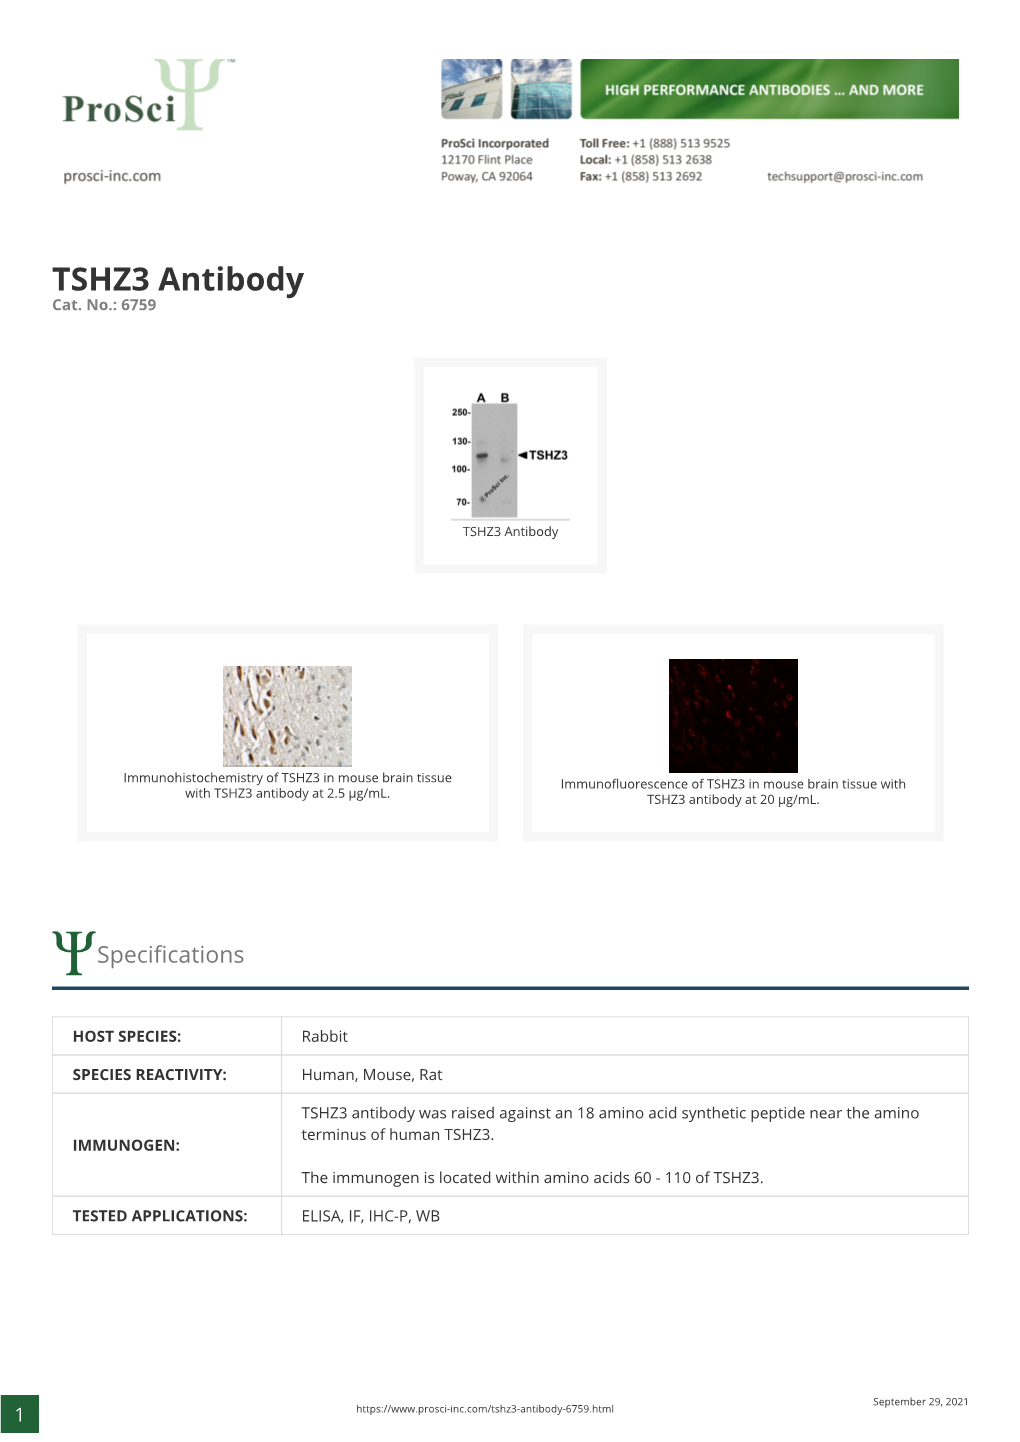 TSHZ3 Antibody Cat